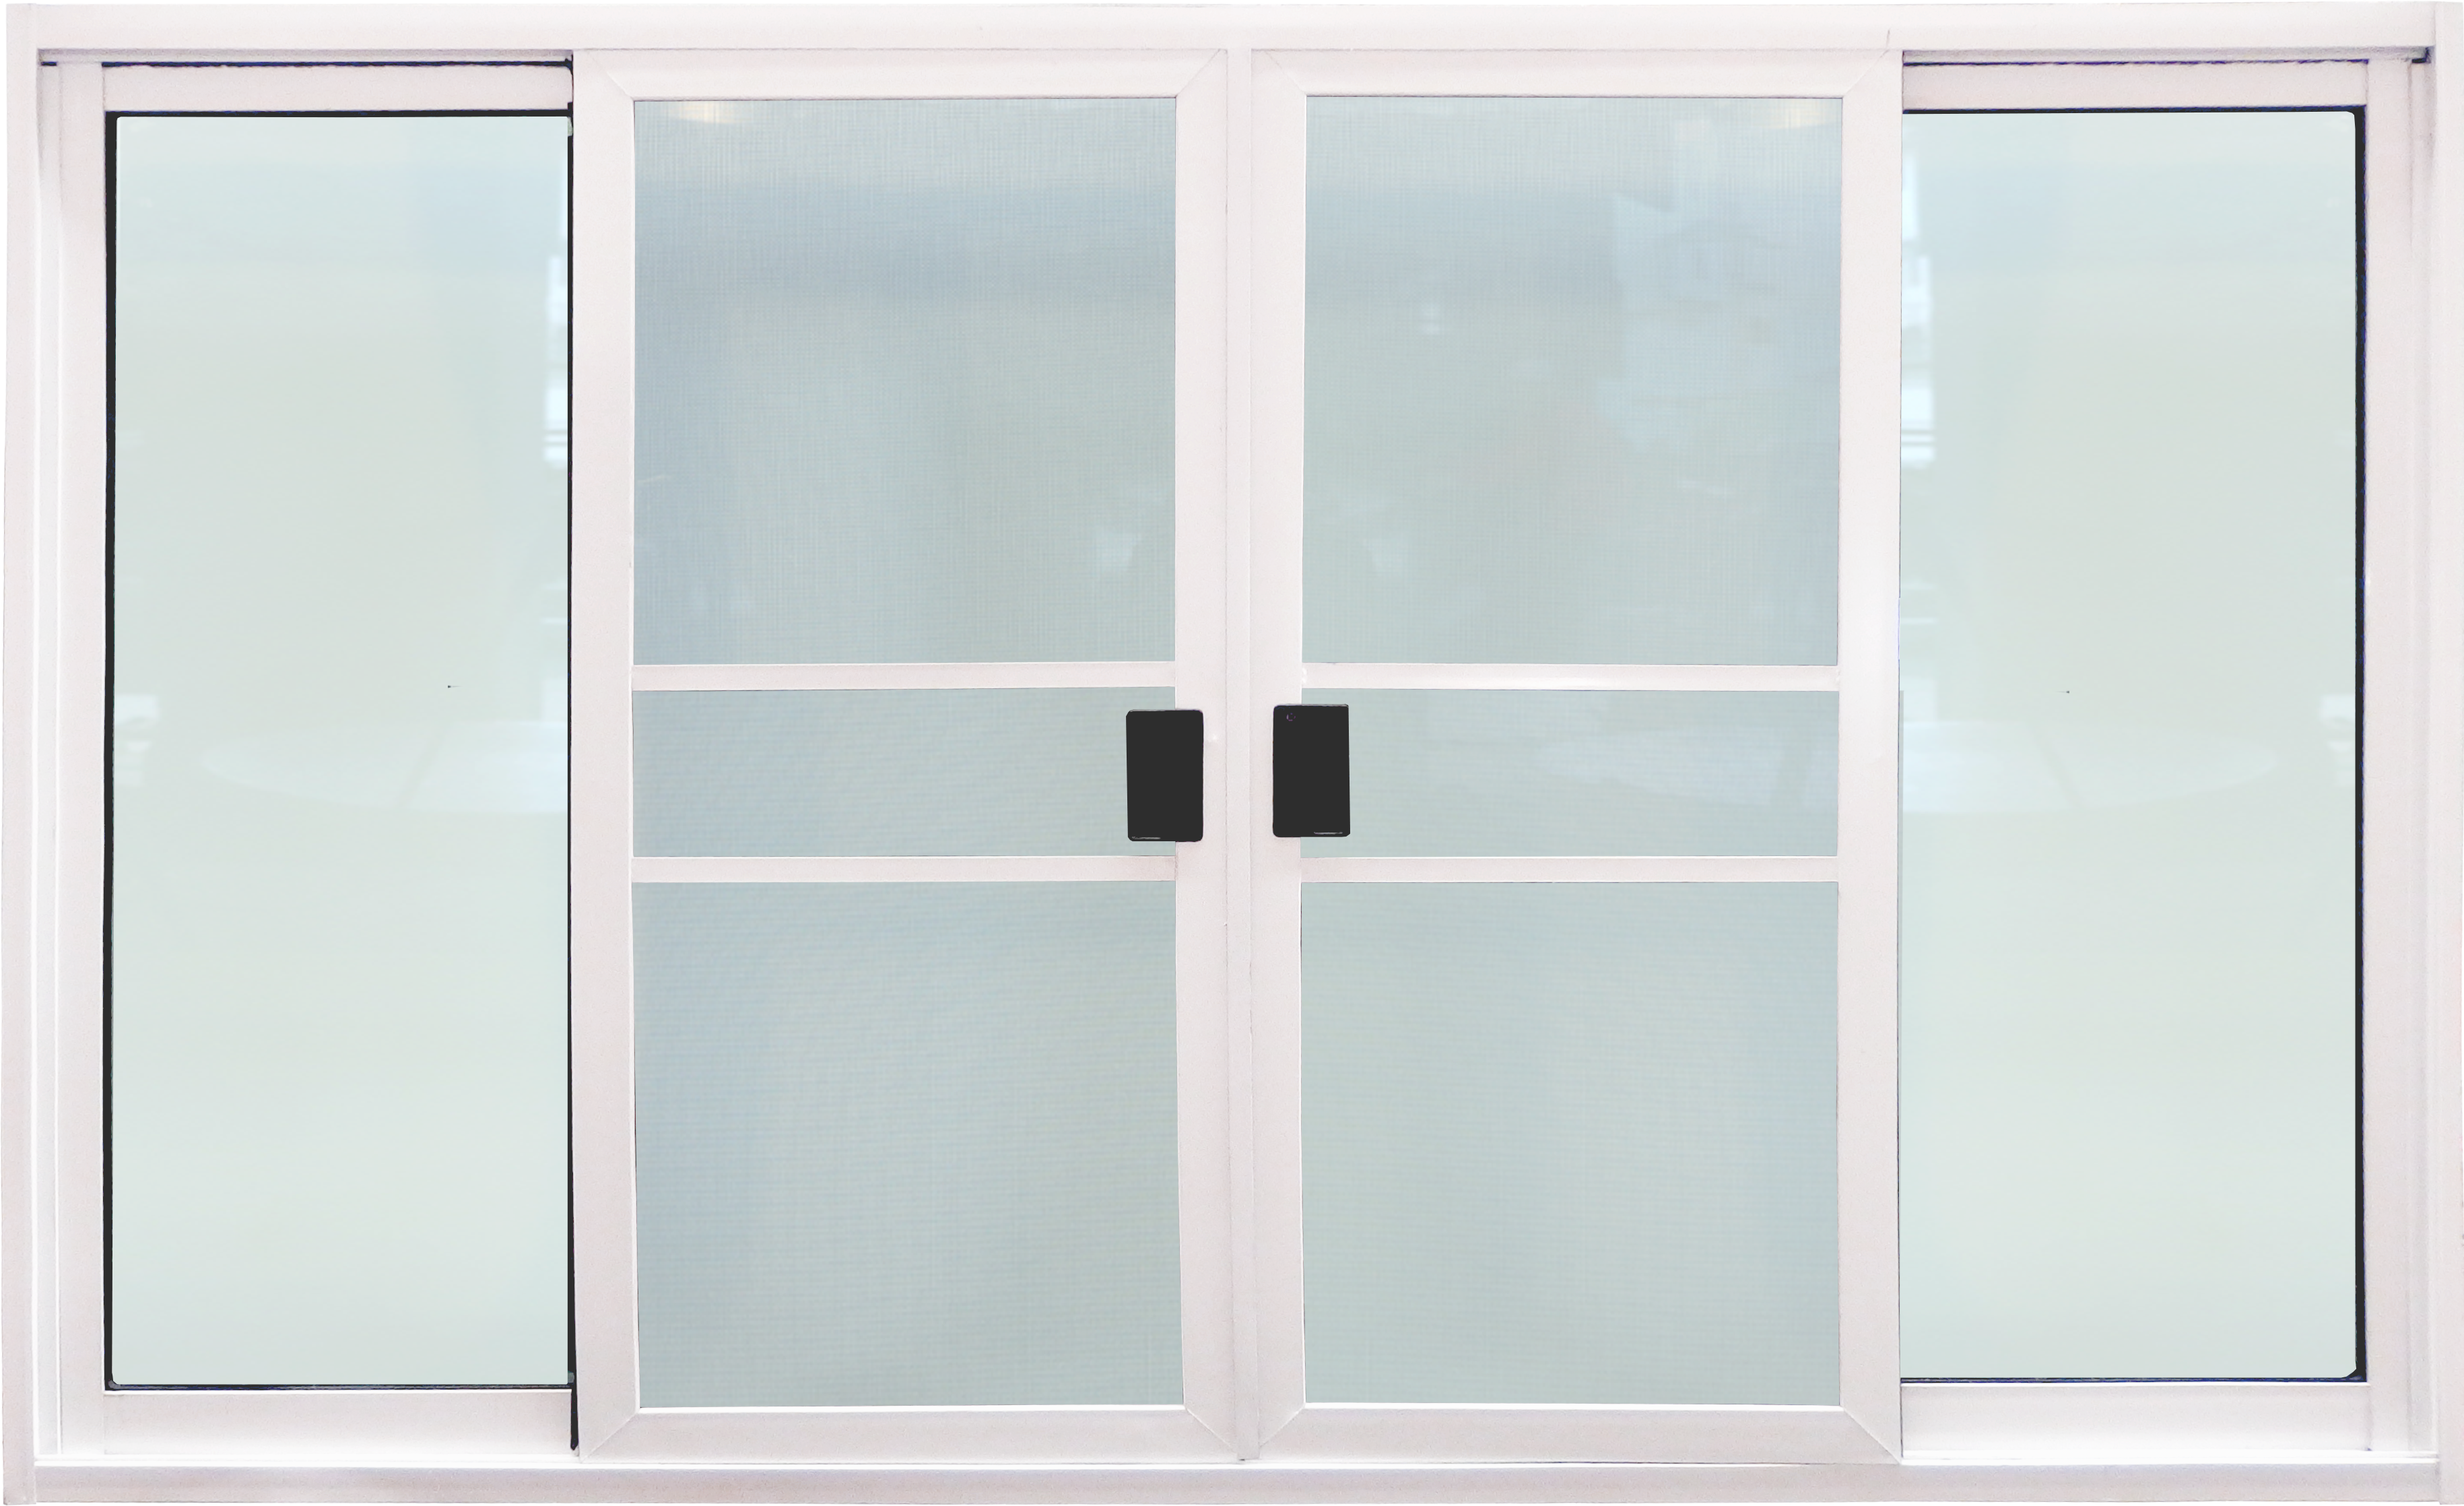 หน้าต่างบานเลื่อน 3ช่อง อลูมิเนียมสีอบขาว+กระจกใสเขียว+มุ้ง 182ซม.*105ซม.